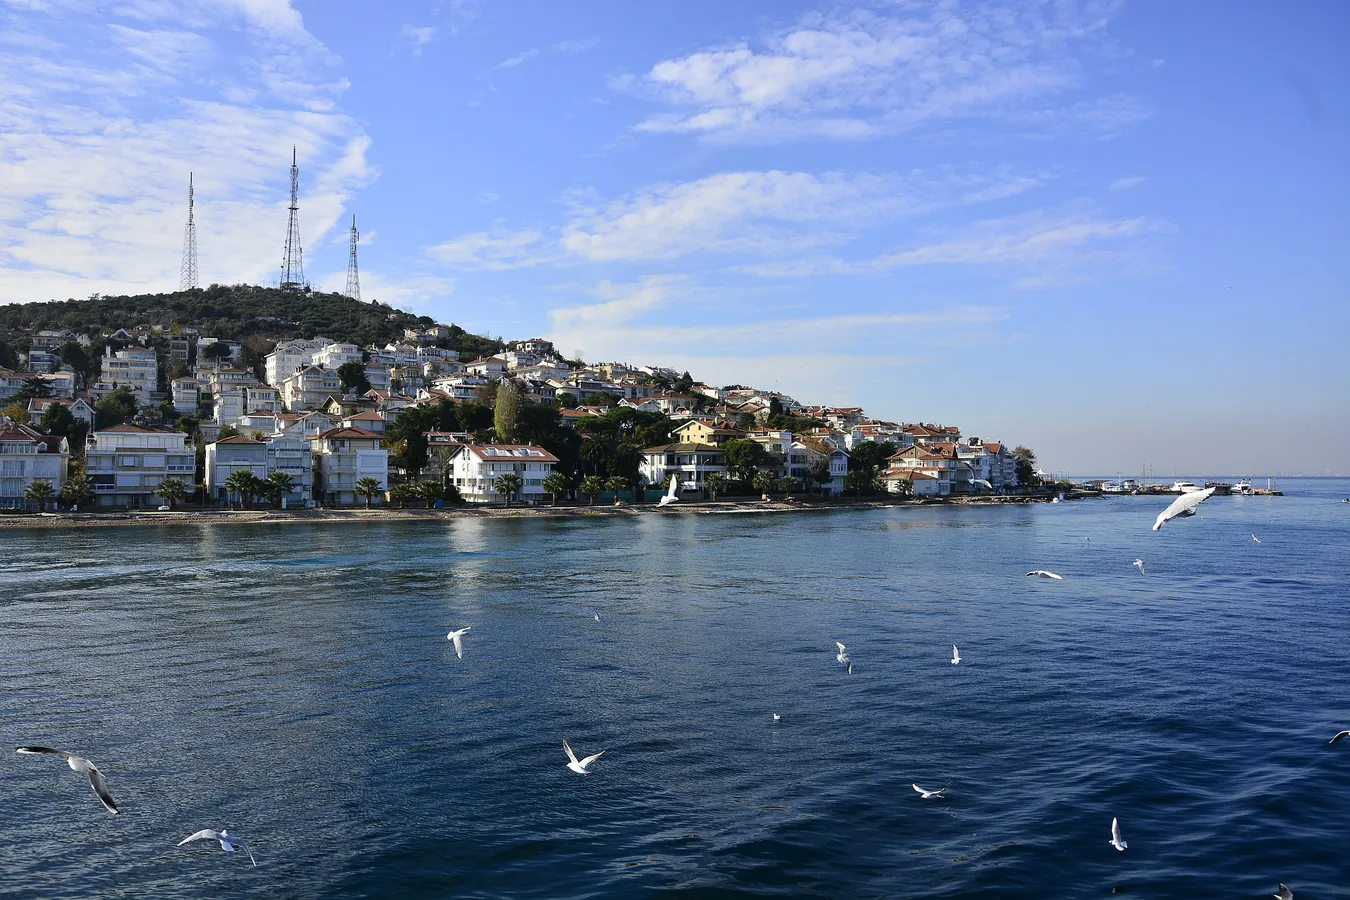 Gaviotas volando frente a la costa de una de las islas de Estambul.